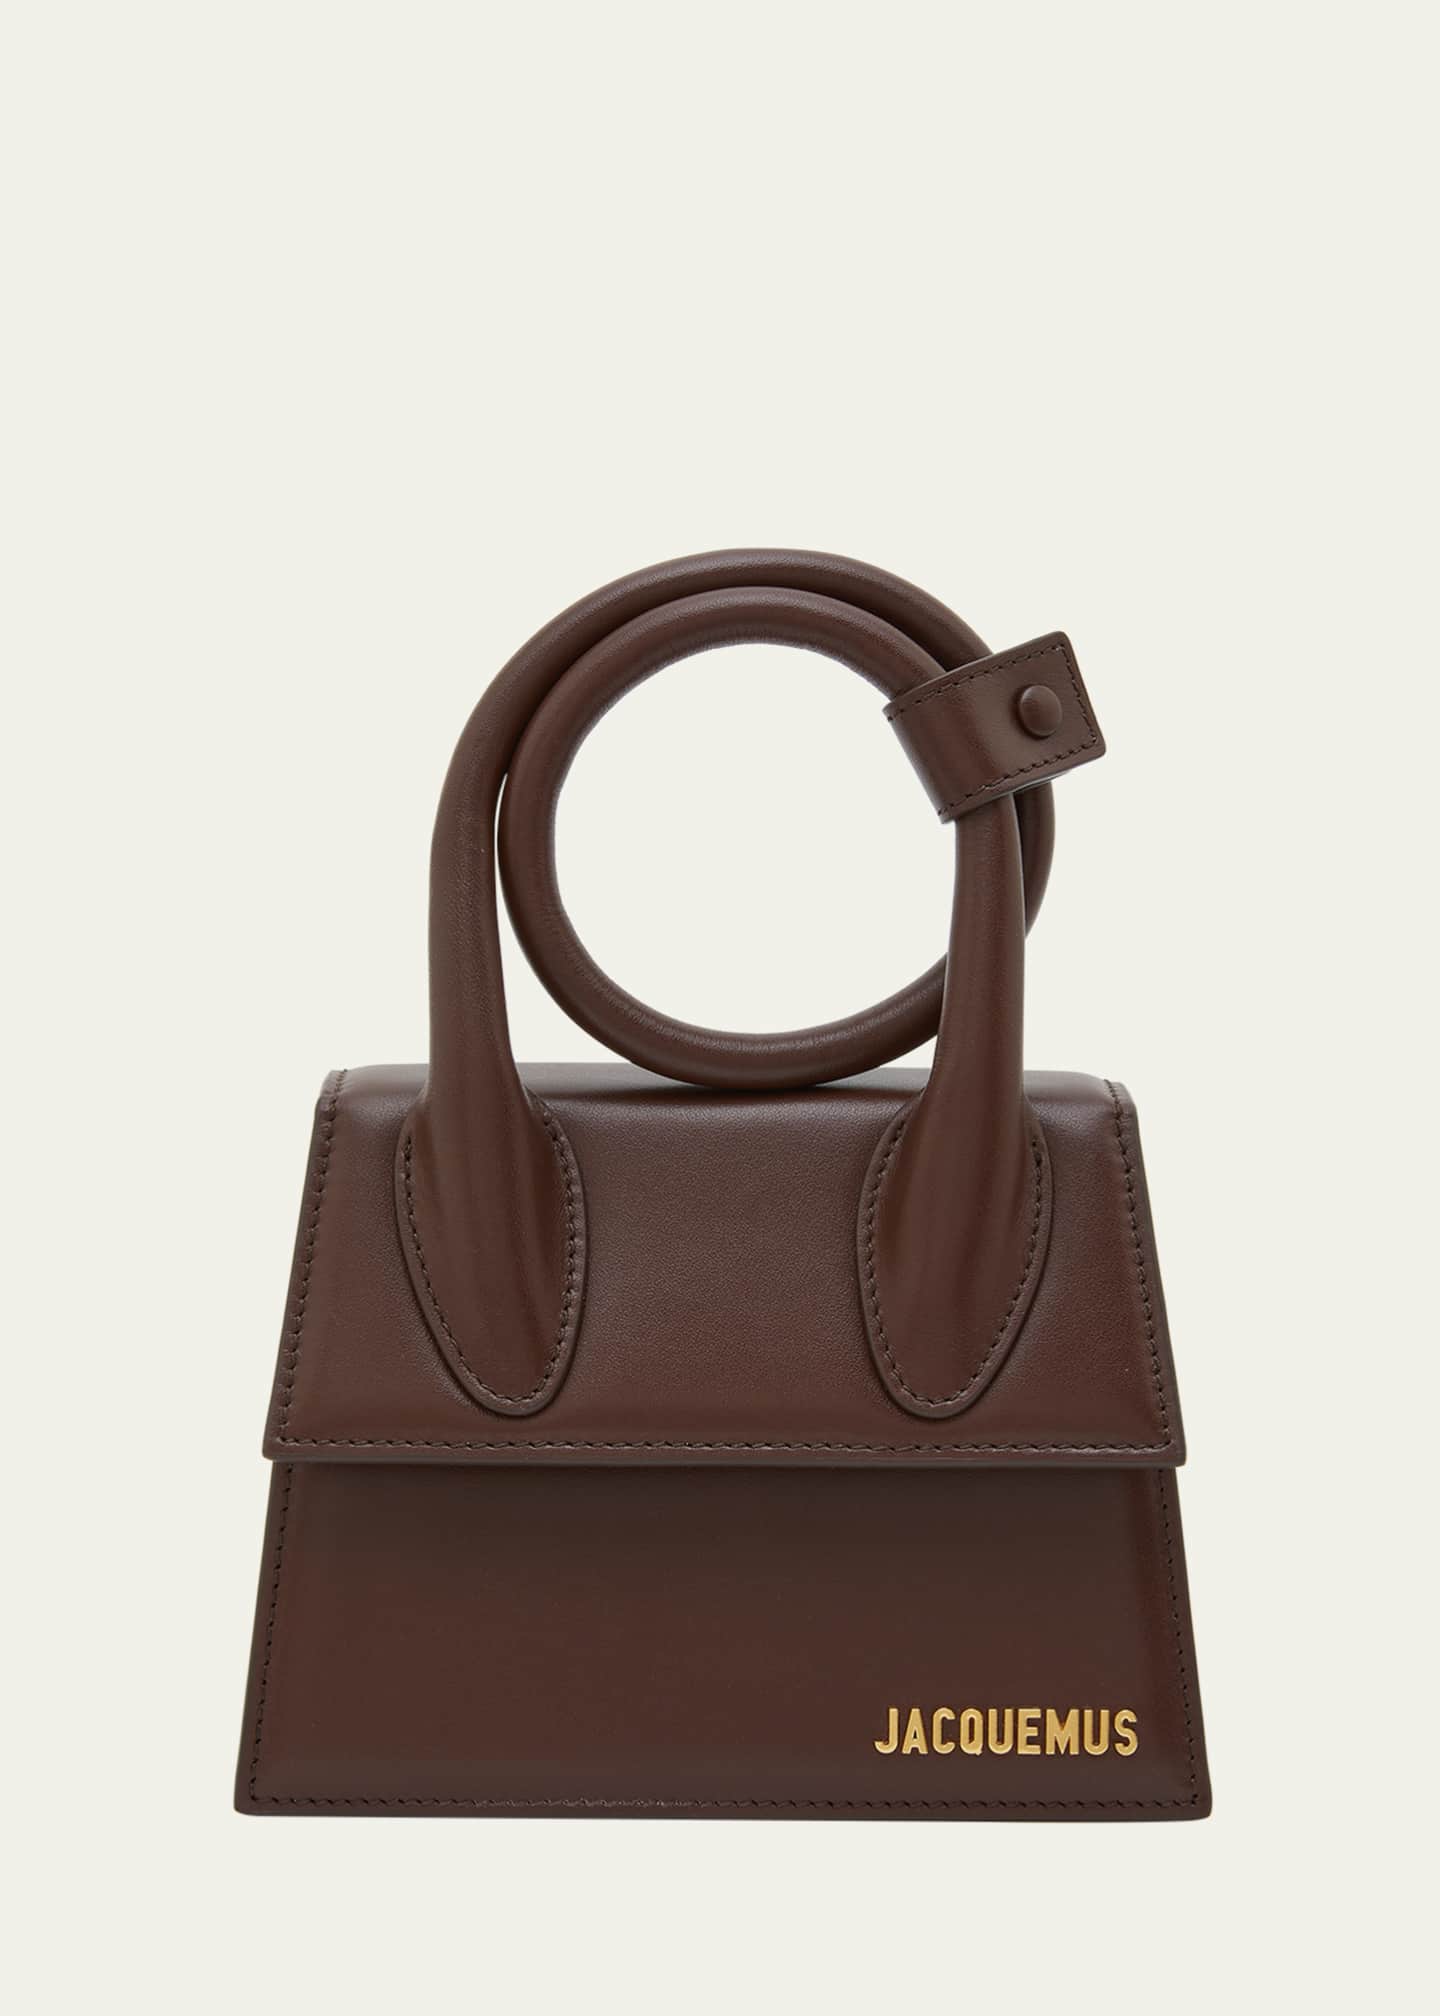 Jacquemus 'Le Chiquito Noeud' shoulder bag, Women's Bags